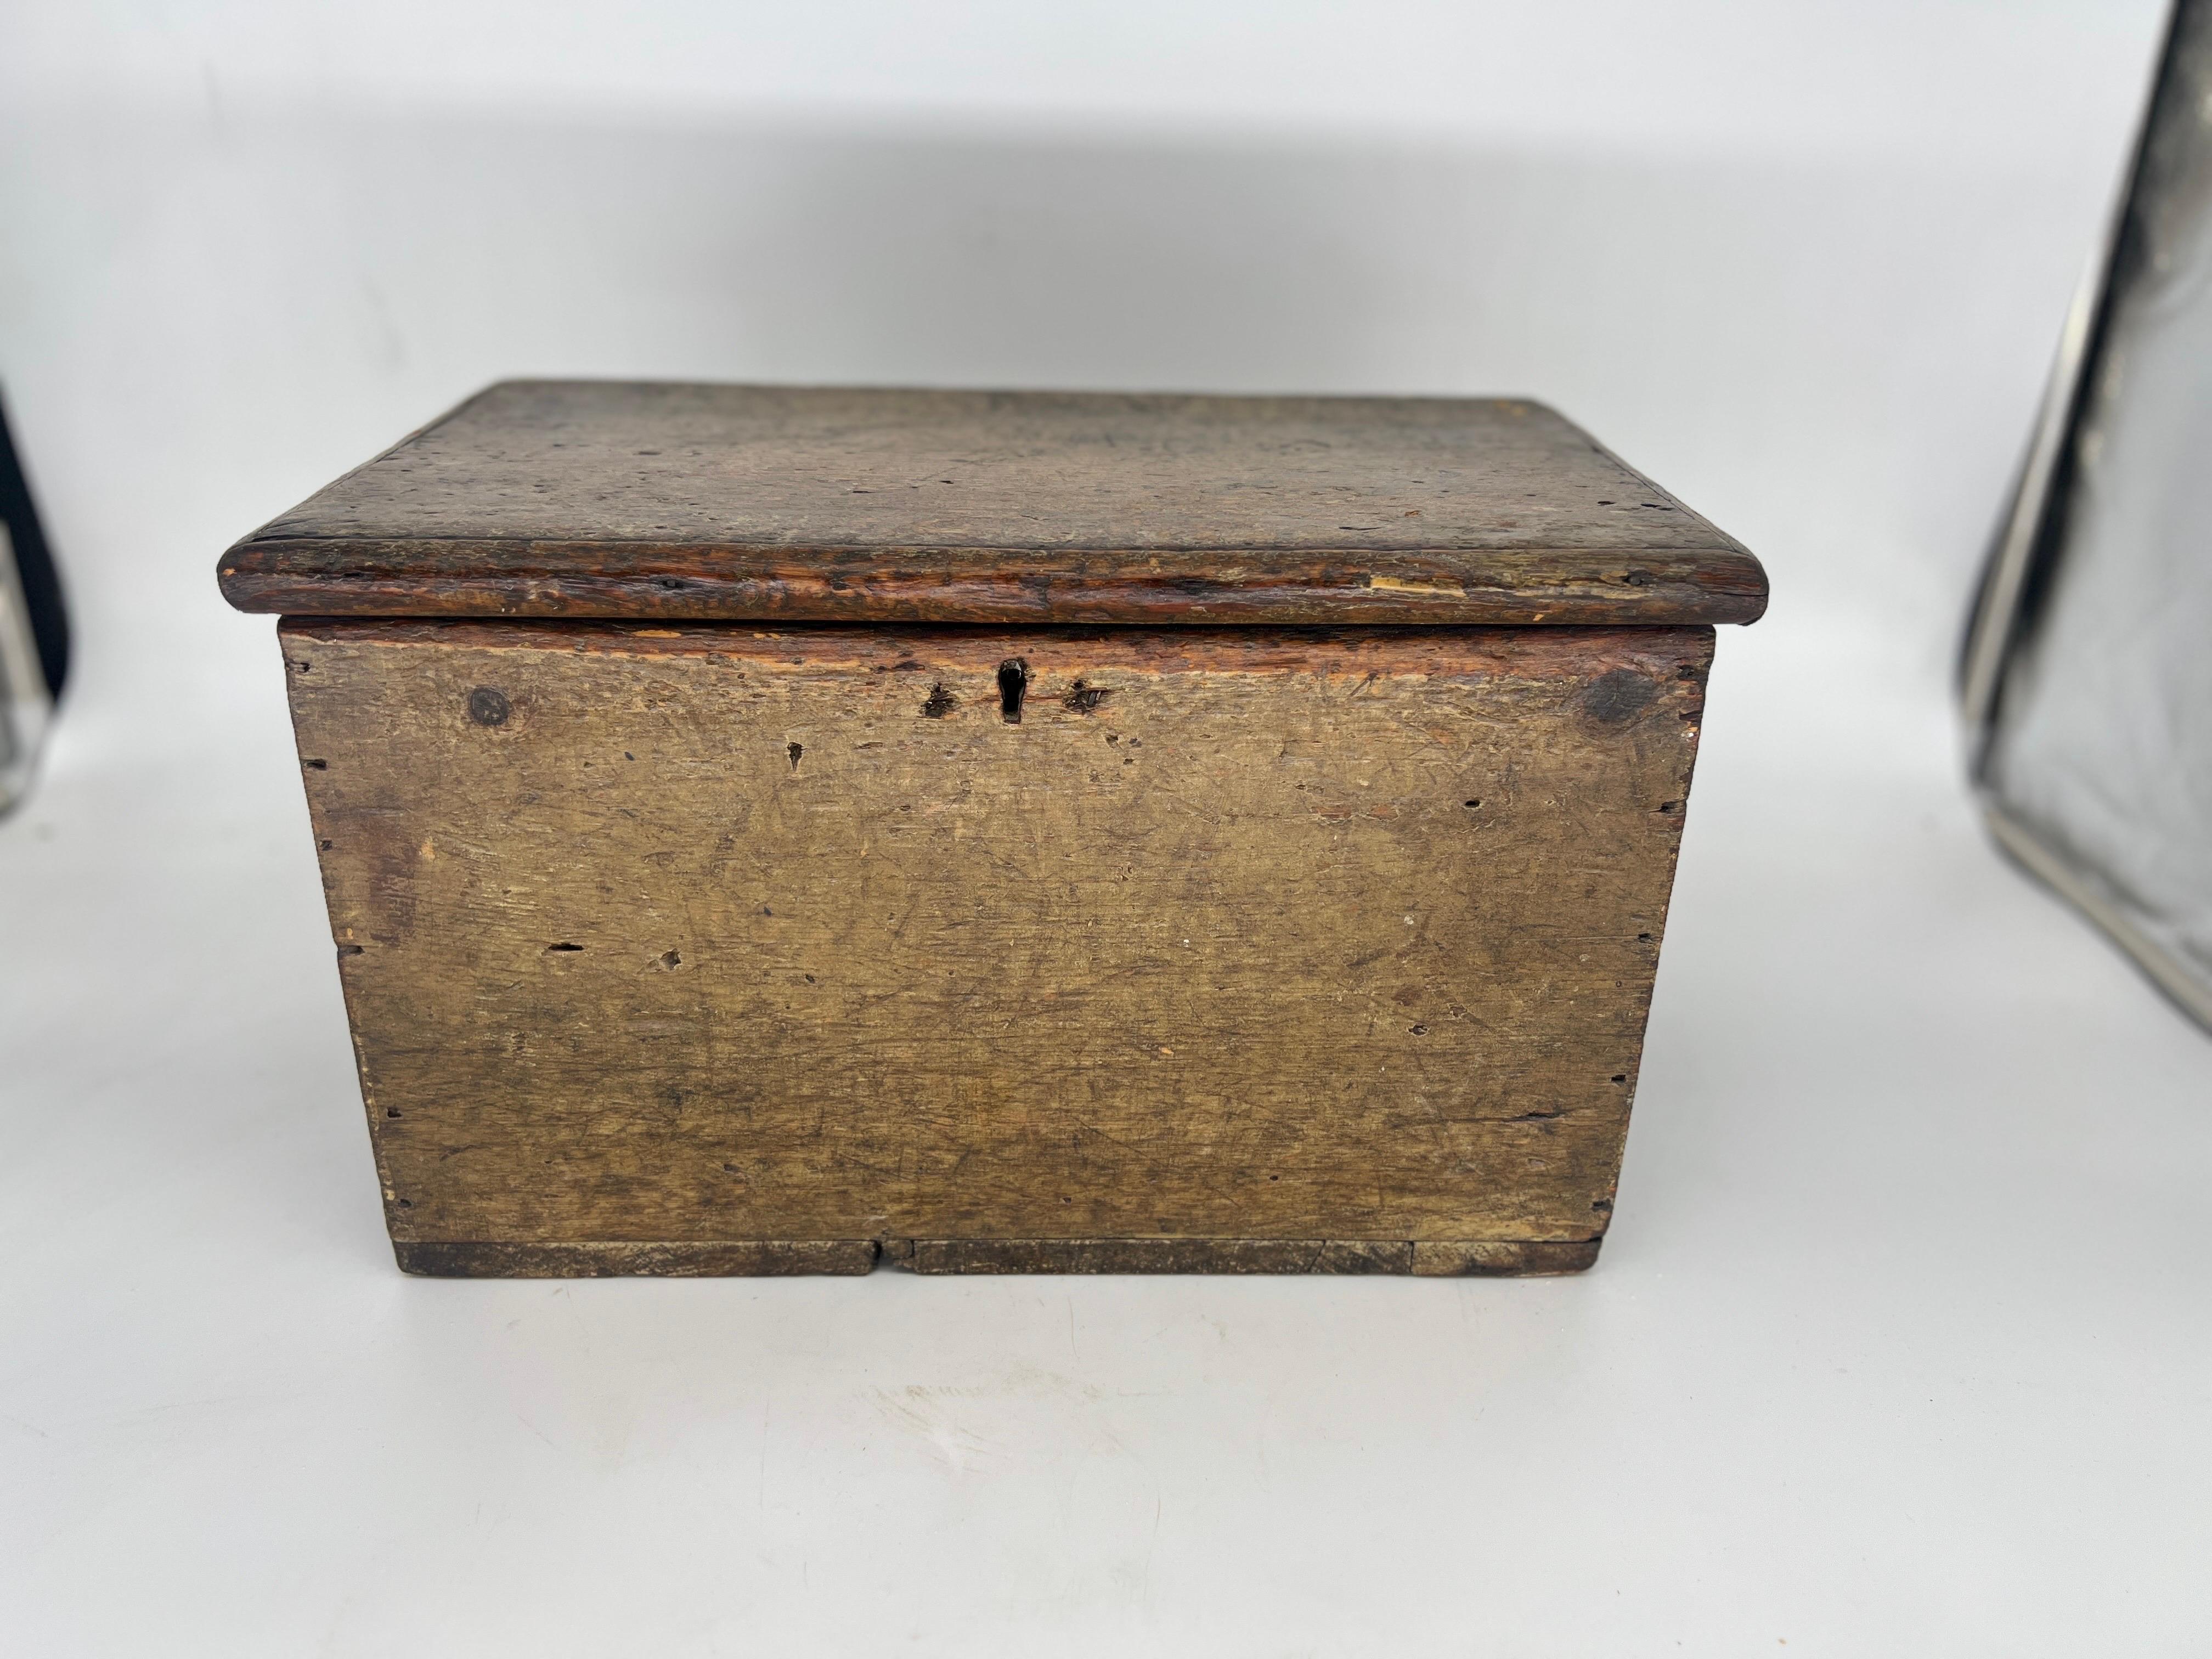 Diese antike amerikanische Aufbewahrungsbox versprüht mit ihrem handgemalten Design auf einer stabilen Holzoberfläche einen charmanten rustikalen Charme. Die Kiste stammt aus den 1800er Jahren und bietet reichlich Platz für Werkzeuge oder Dokumente.